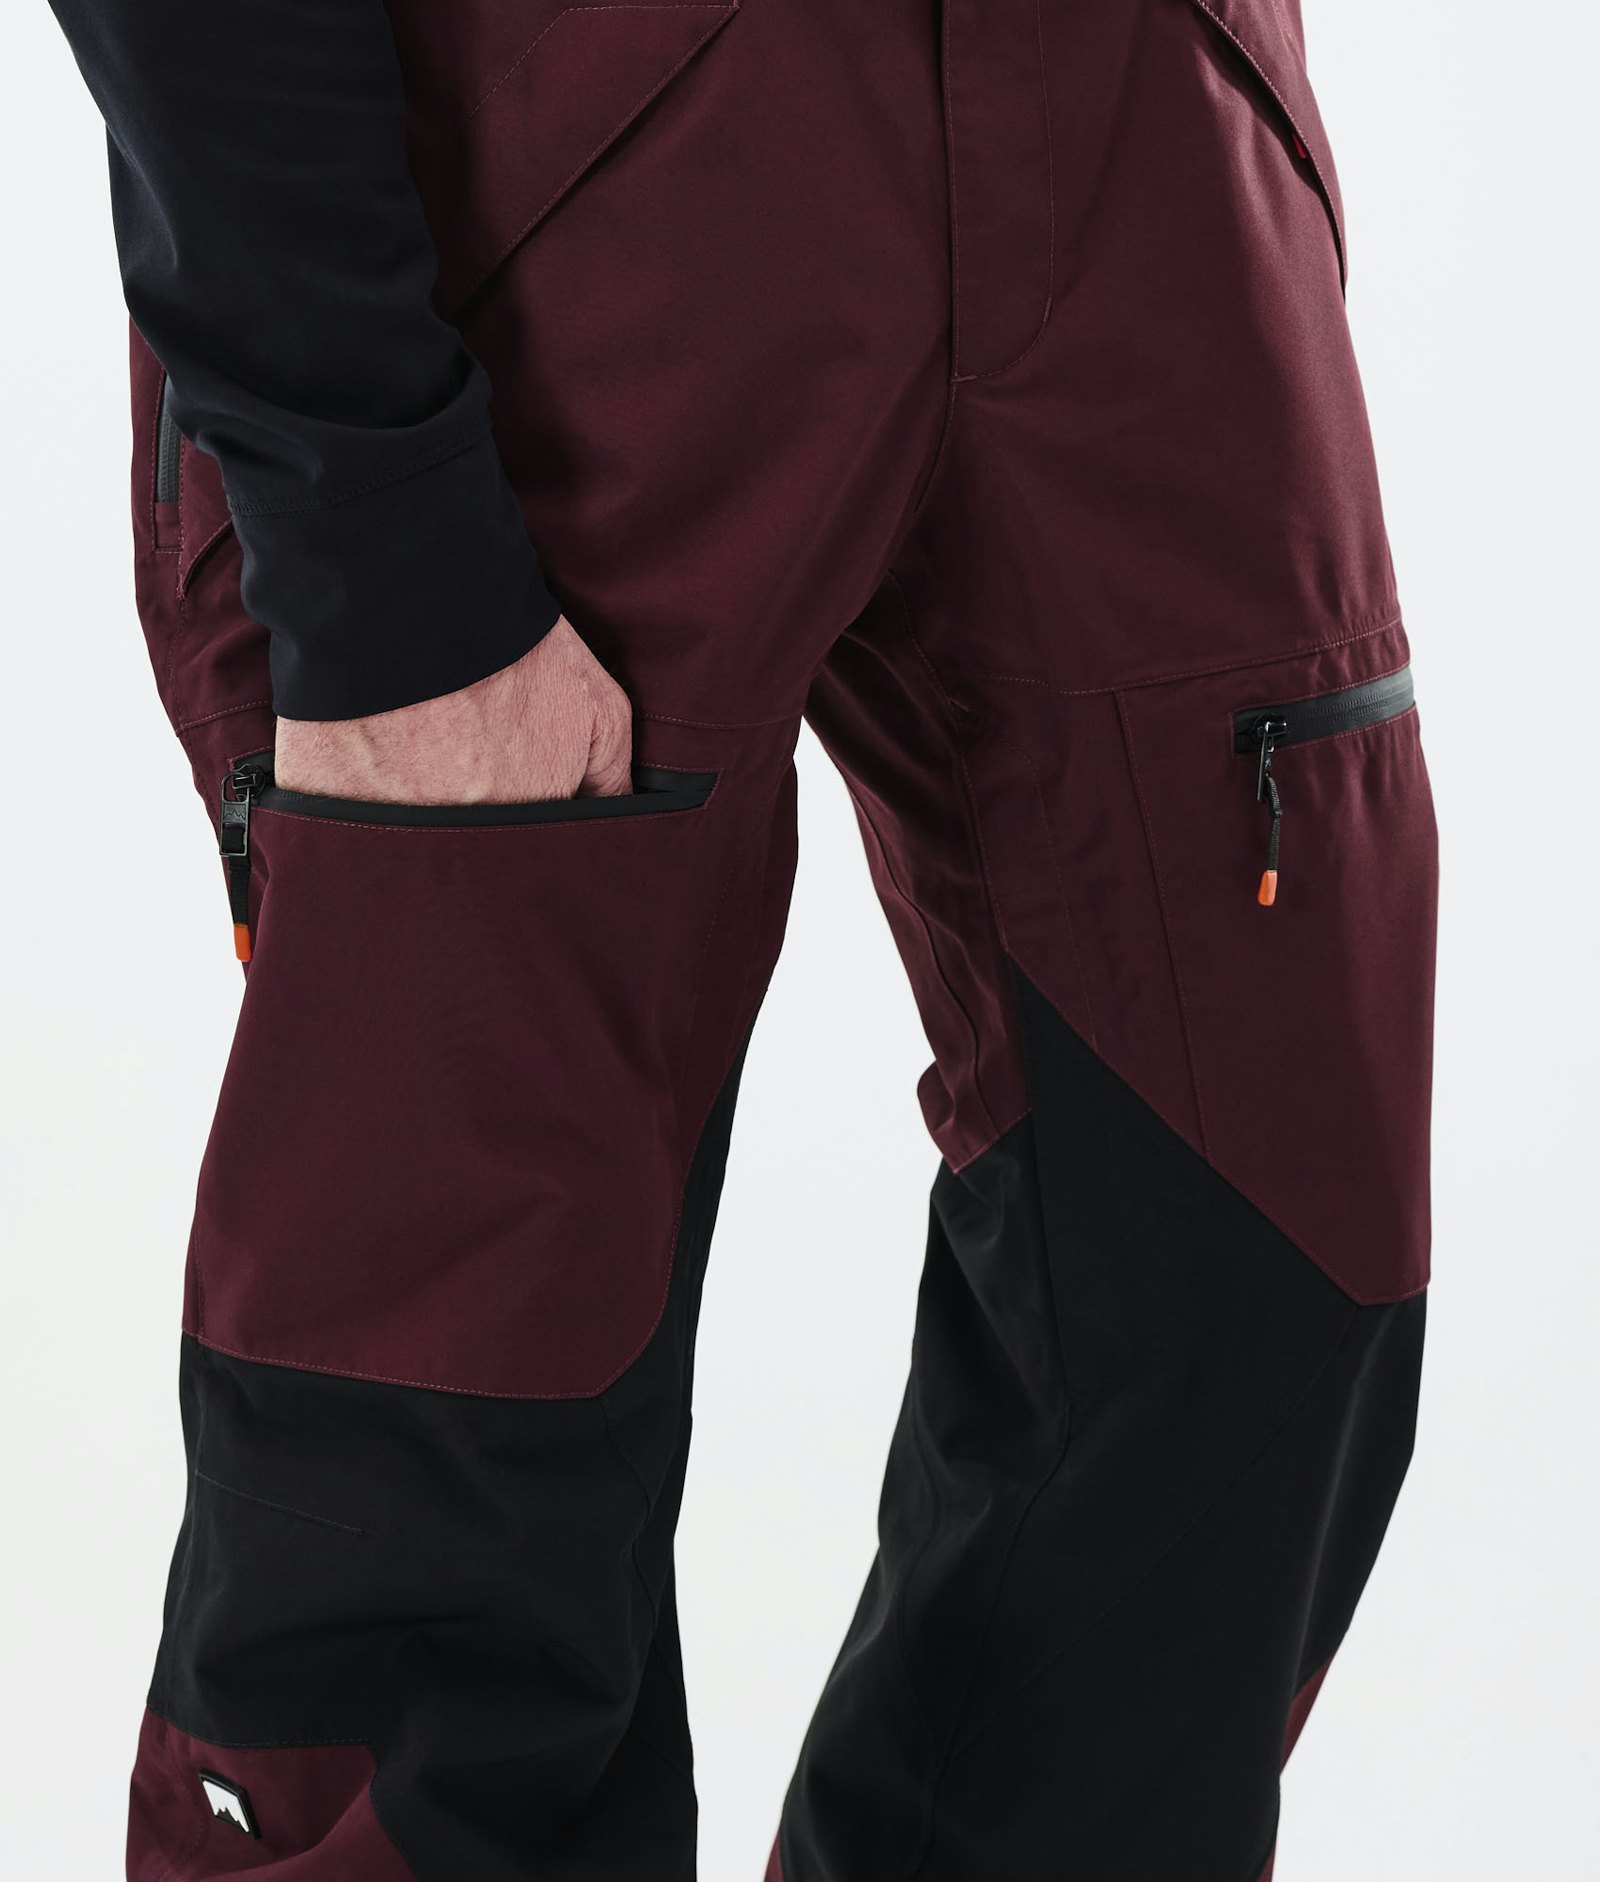 Moss 2021 Spodnie Snowboardowe Mężczyźni Burgundy/Black